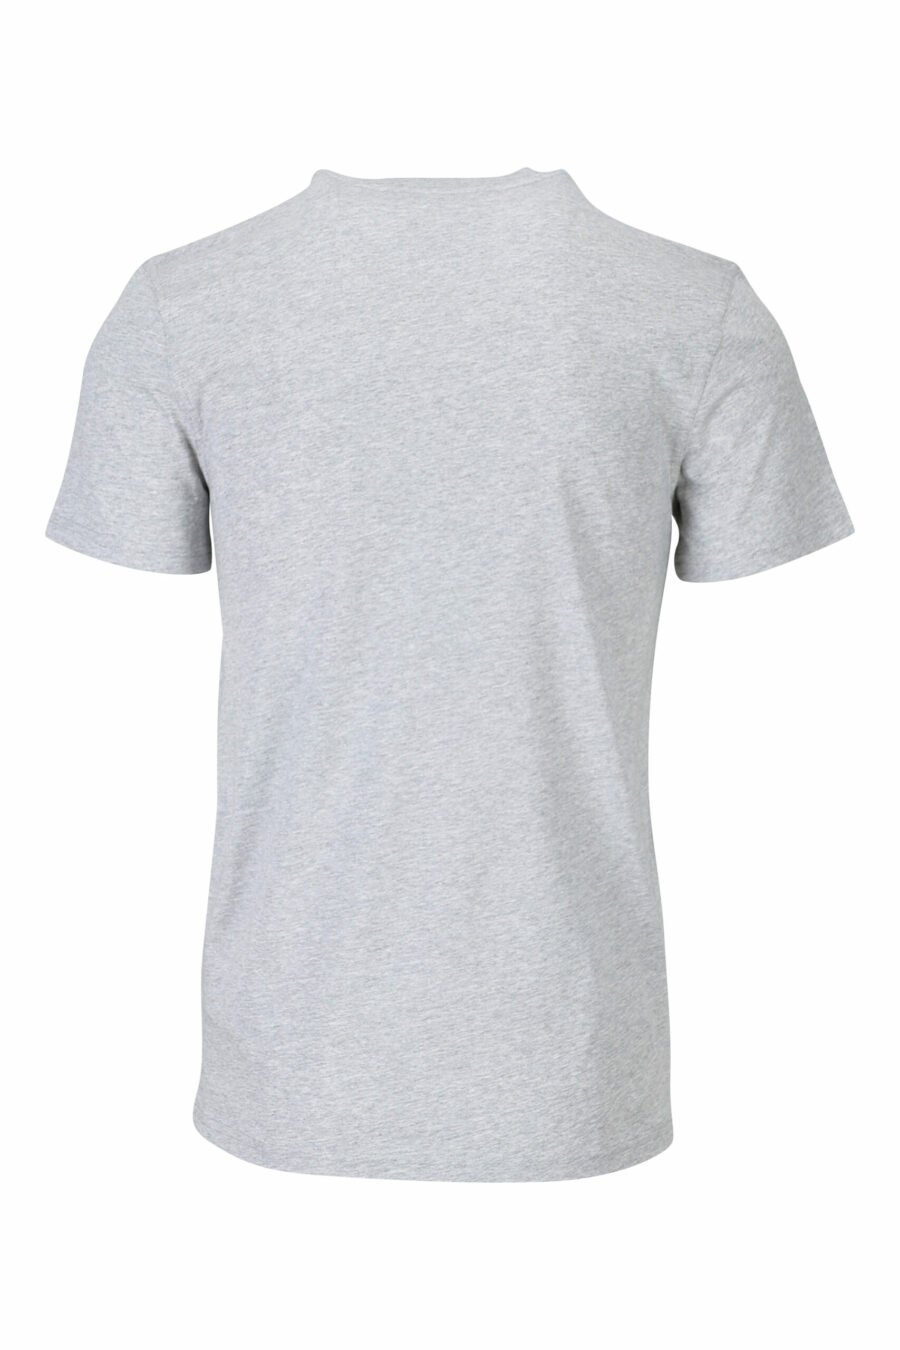 T-shirt grau mit "teddy" maßgeschneidert maxilogo - 667113124766 1 skaliert